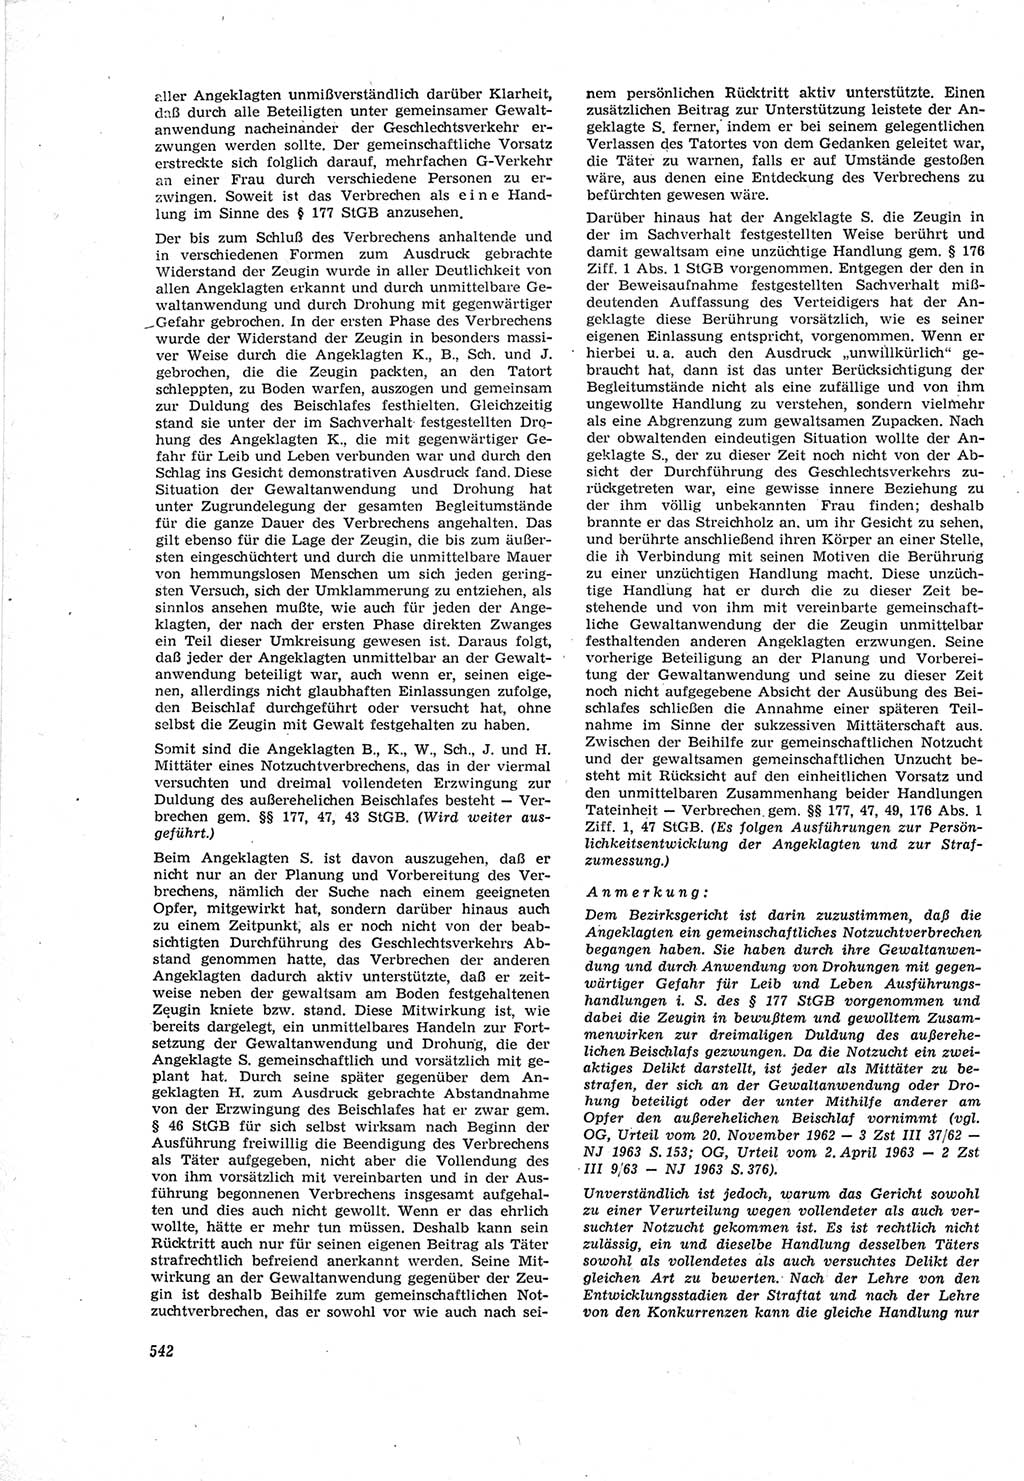 Neue Justiz (NJ), Zeitschrift für Recht und Rechtswissenschaft [Deutsche Demokratische Republik (DDR)], 18. Jahrgang 1964, Seite 542 (NJ DDR 1964, S. 542)